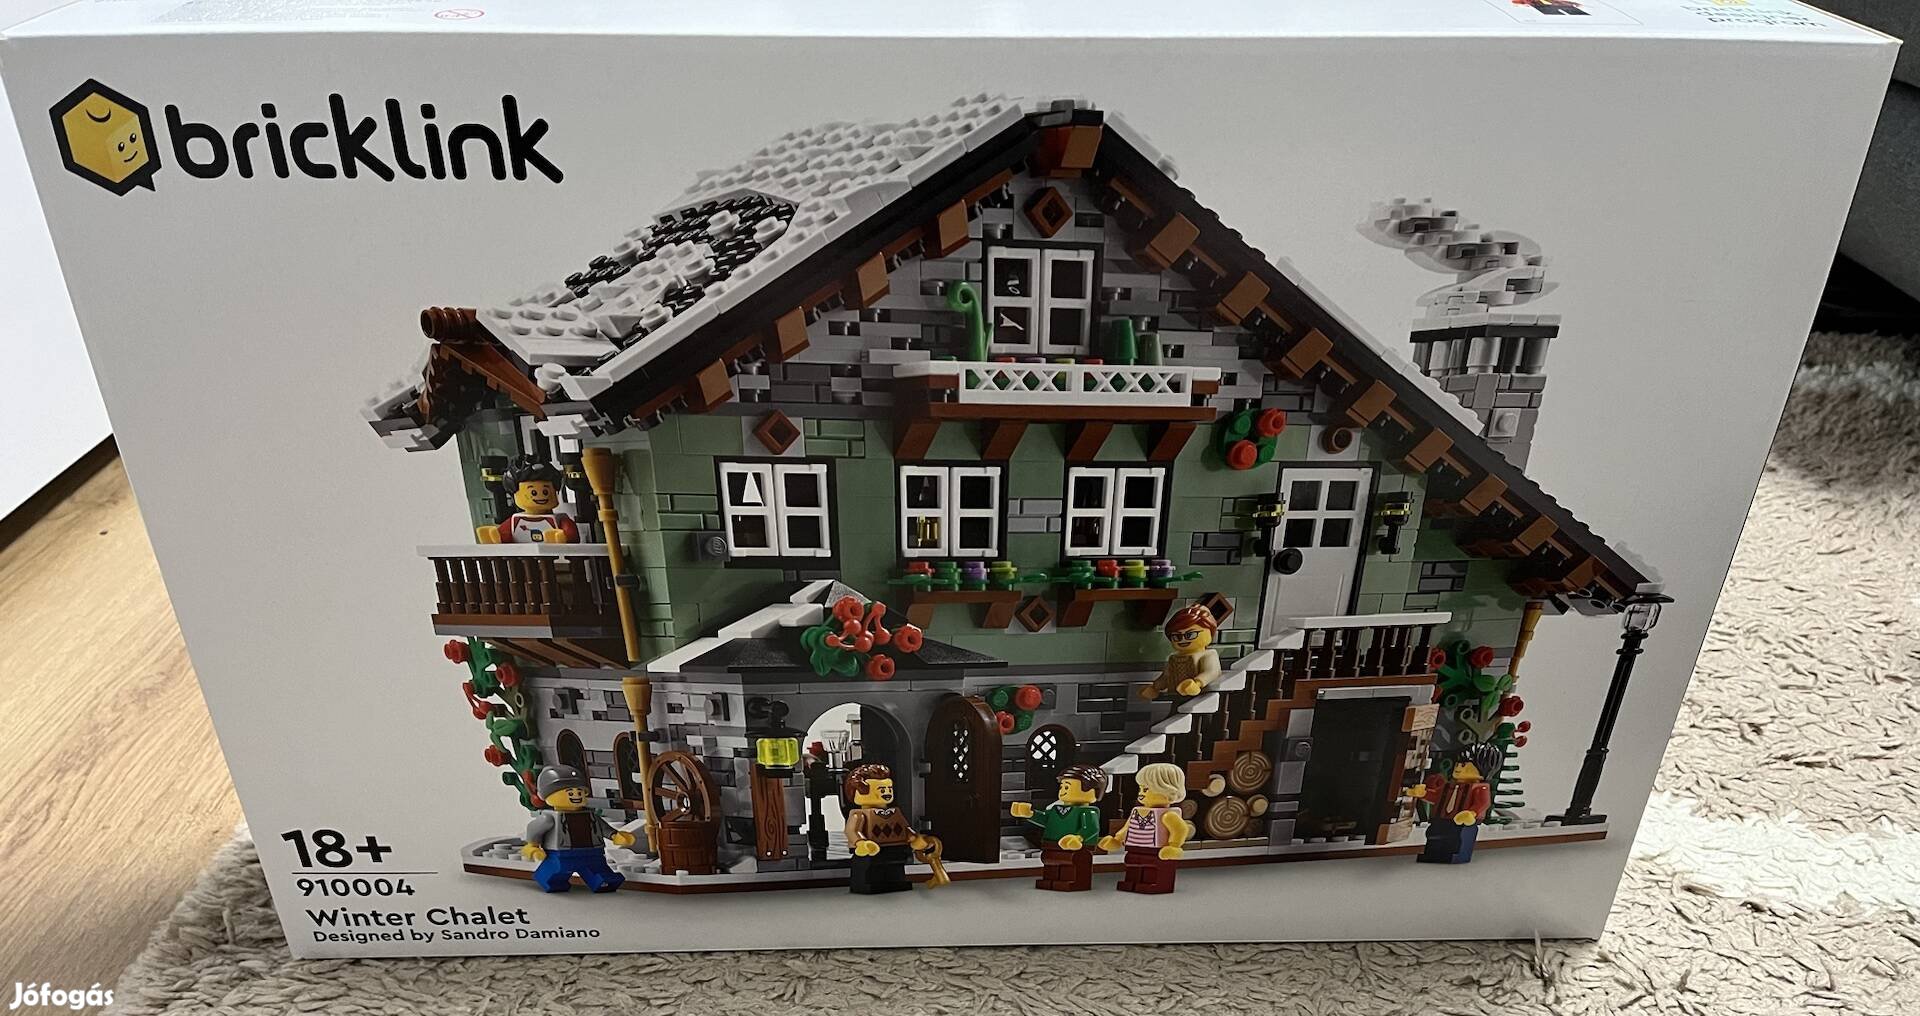 910004 Bricklink - Winter Chale lego